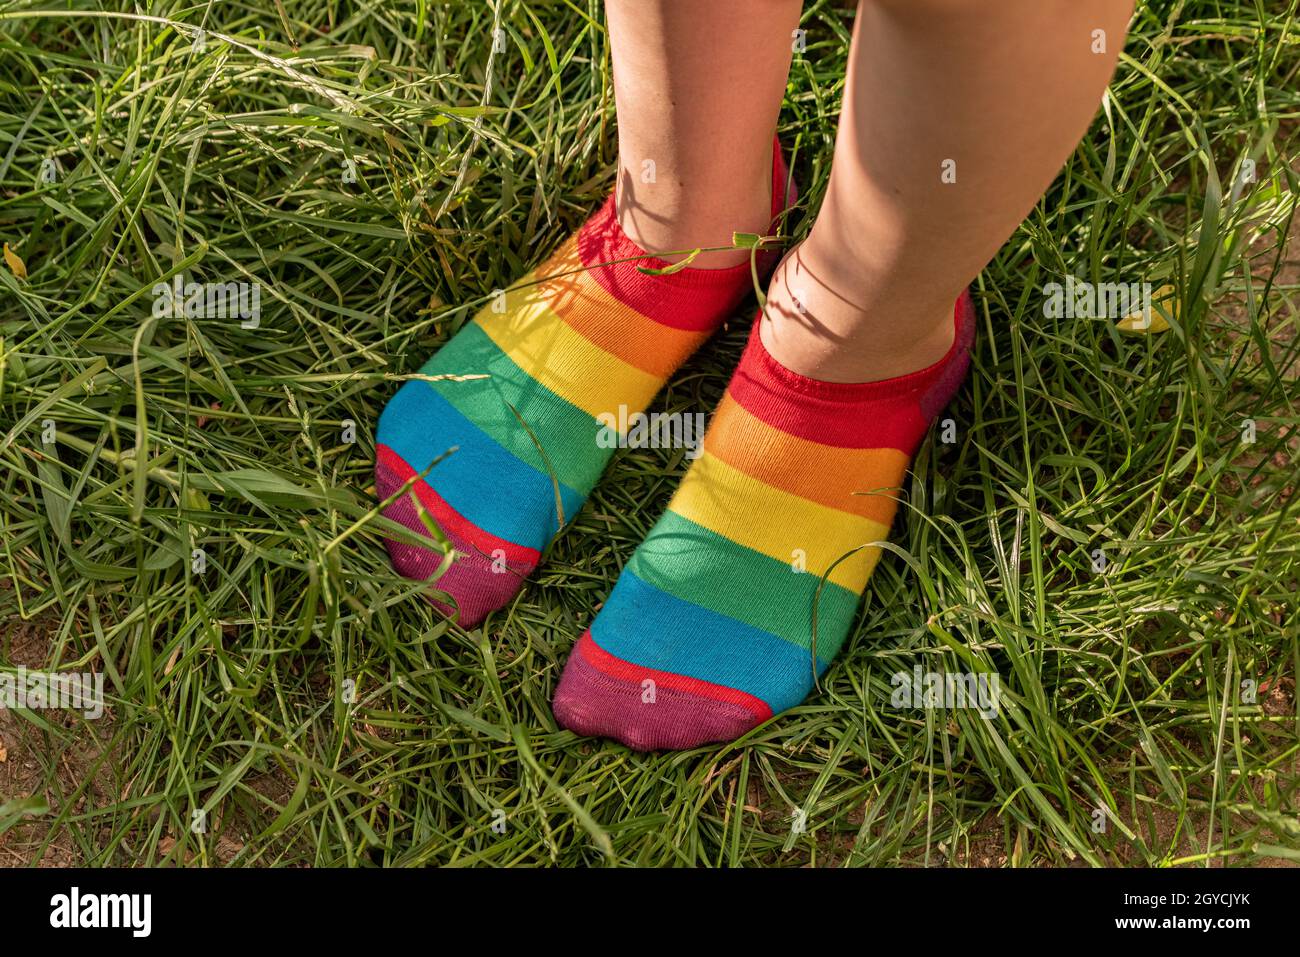 Chaussettes arc-en-ciel sur les pieds de la fille.Pieds d'enfant en  chaussettes colorées sur l'herbe verte Photo Stock - Alamy